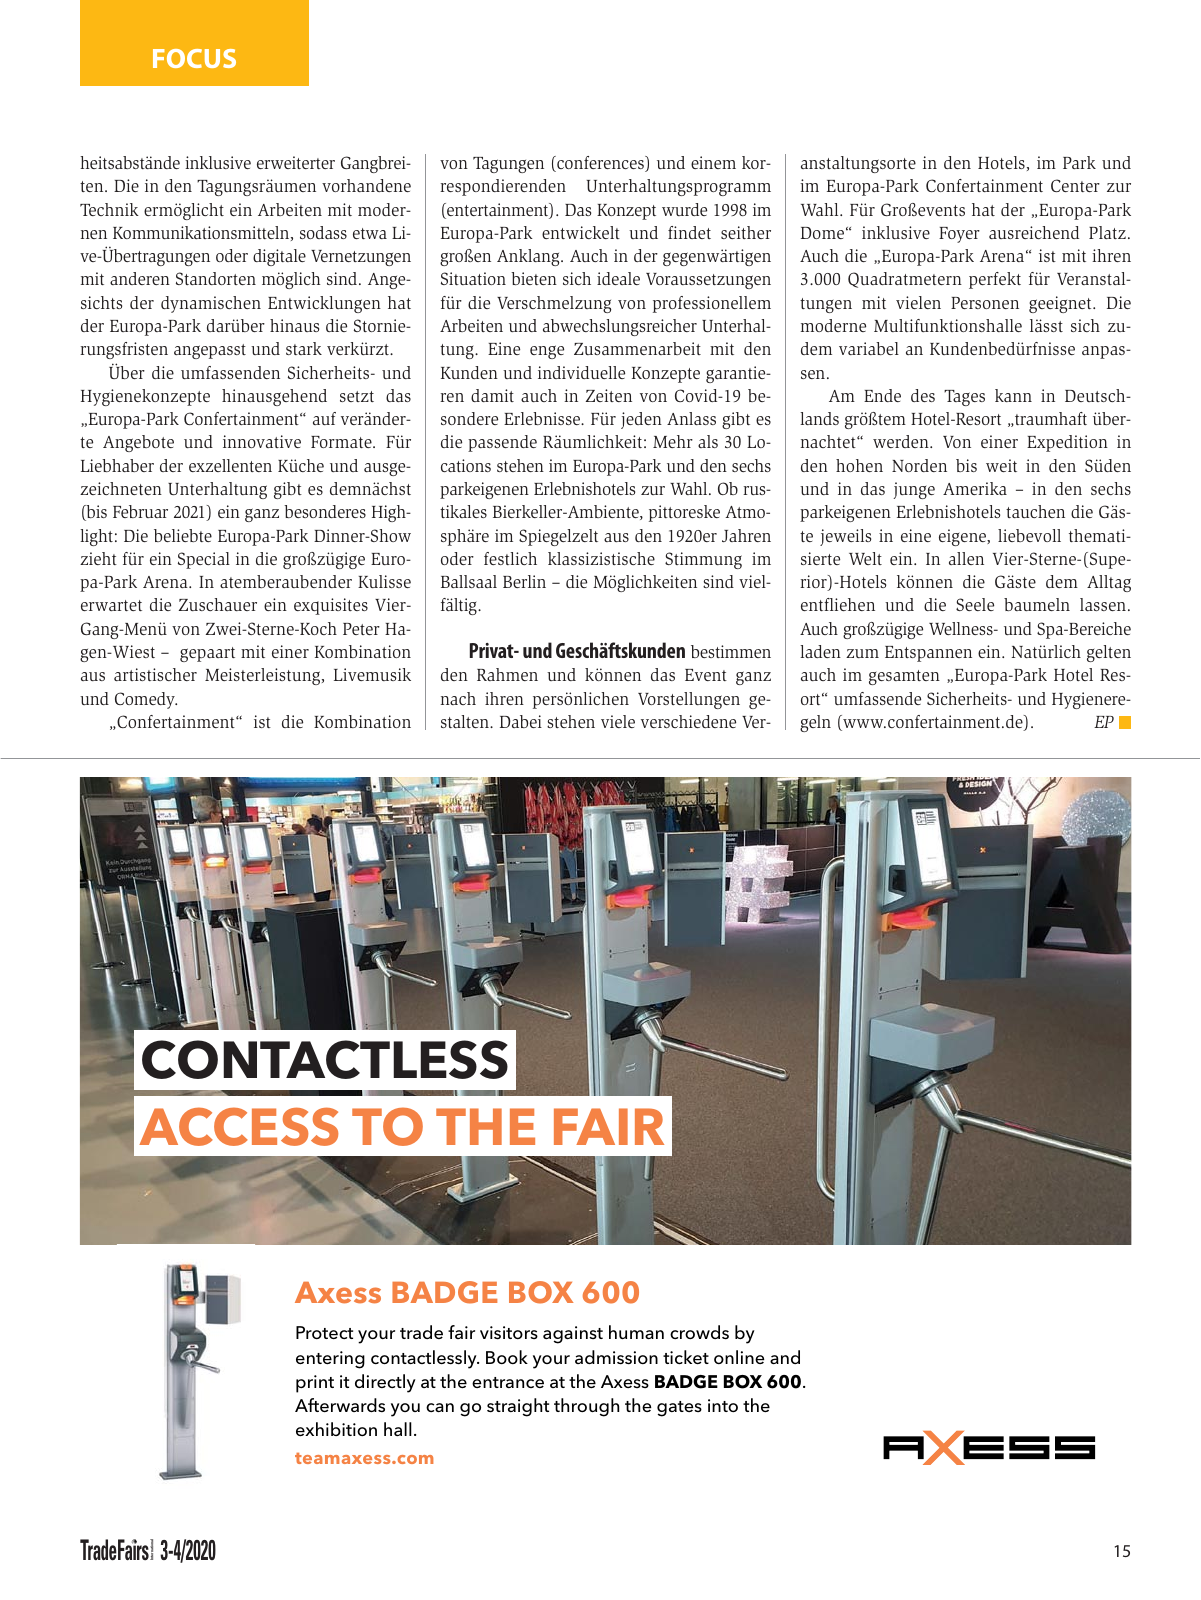 Vorschau TFI Trade-Fairs-International 03-04/2020 Seite 15